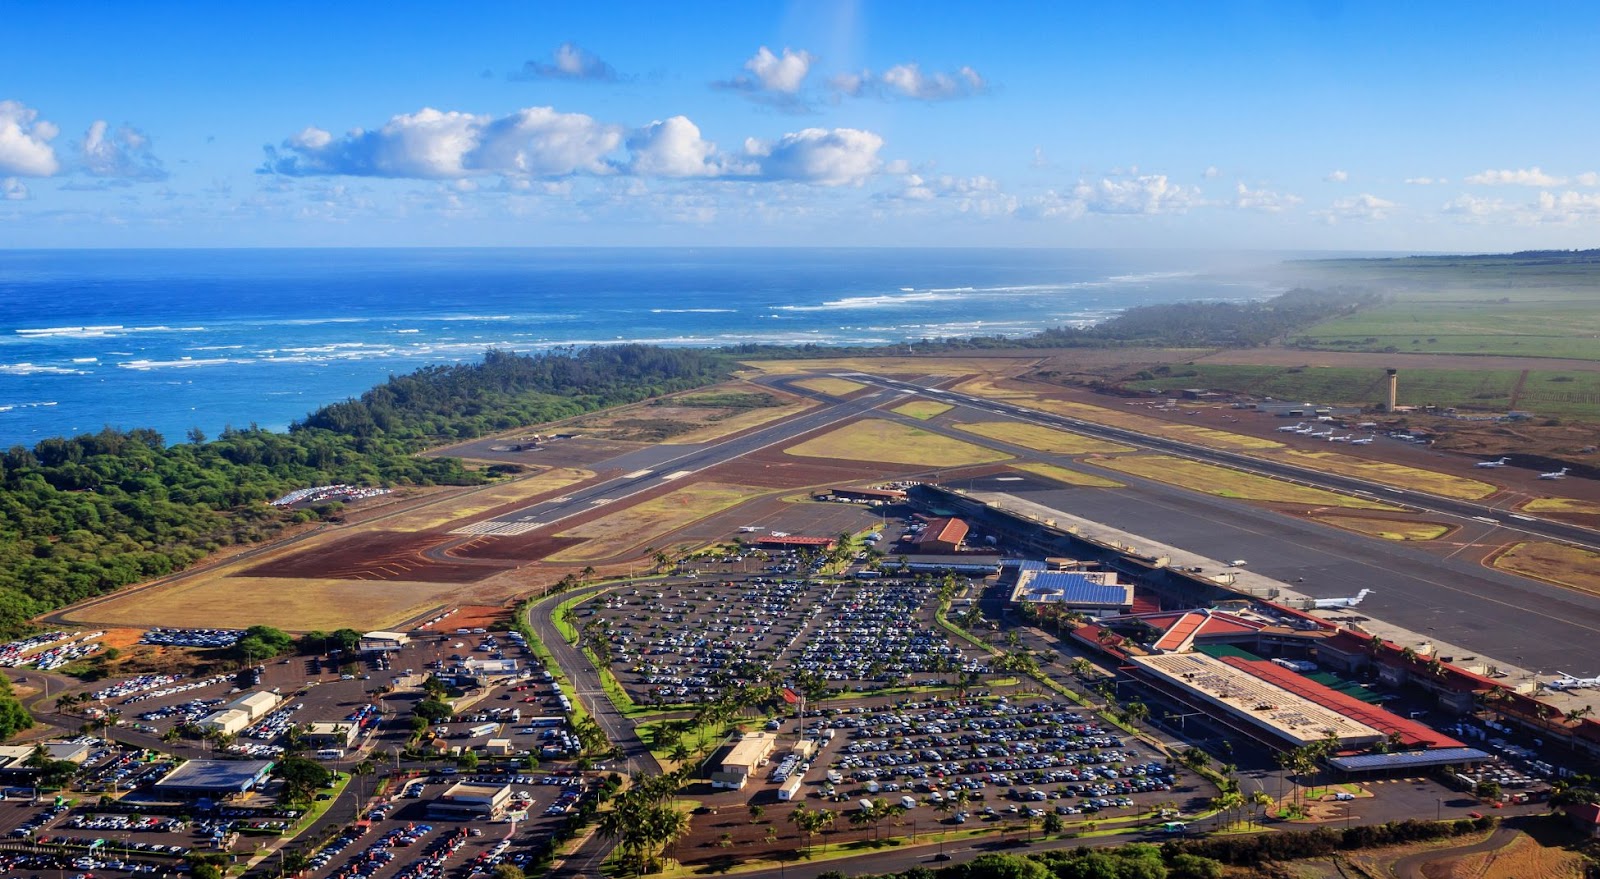 Kahului Airport (OGG) on the island of Maui